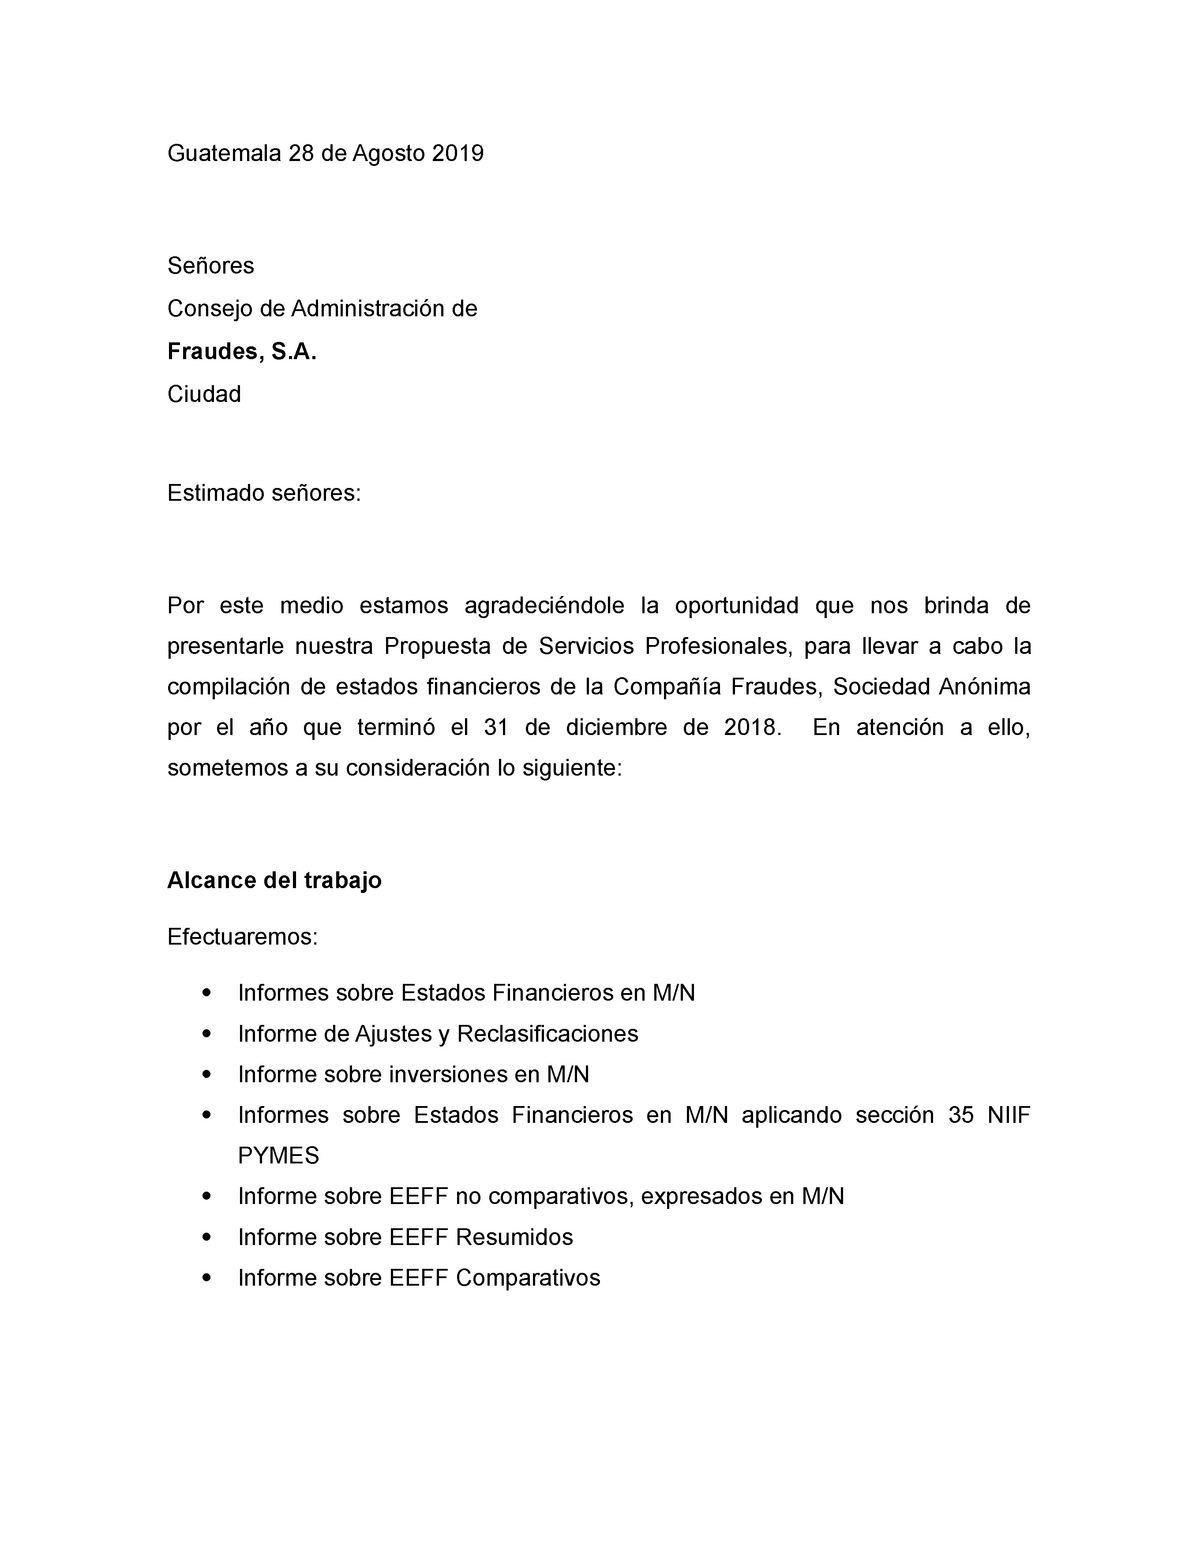 Carta de Propuesta de servicios - Guatemala 28 de Agosto 2019 Señores  Consejo de Administración de - Studocu